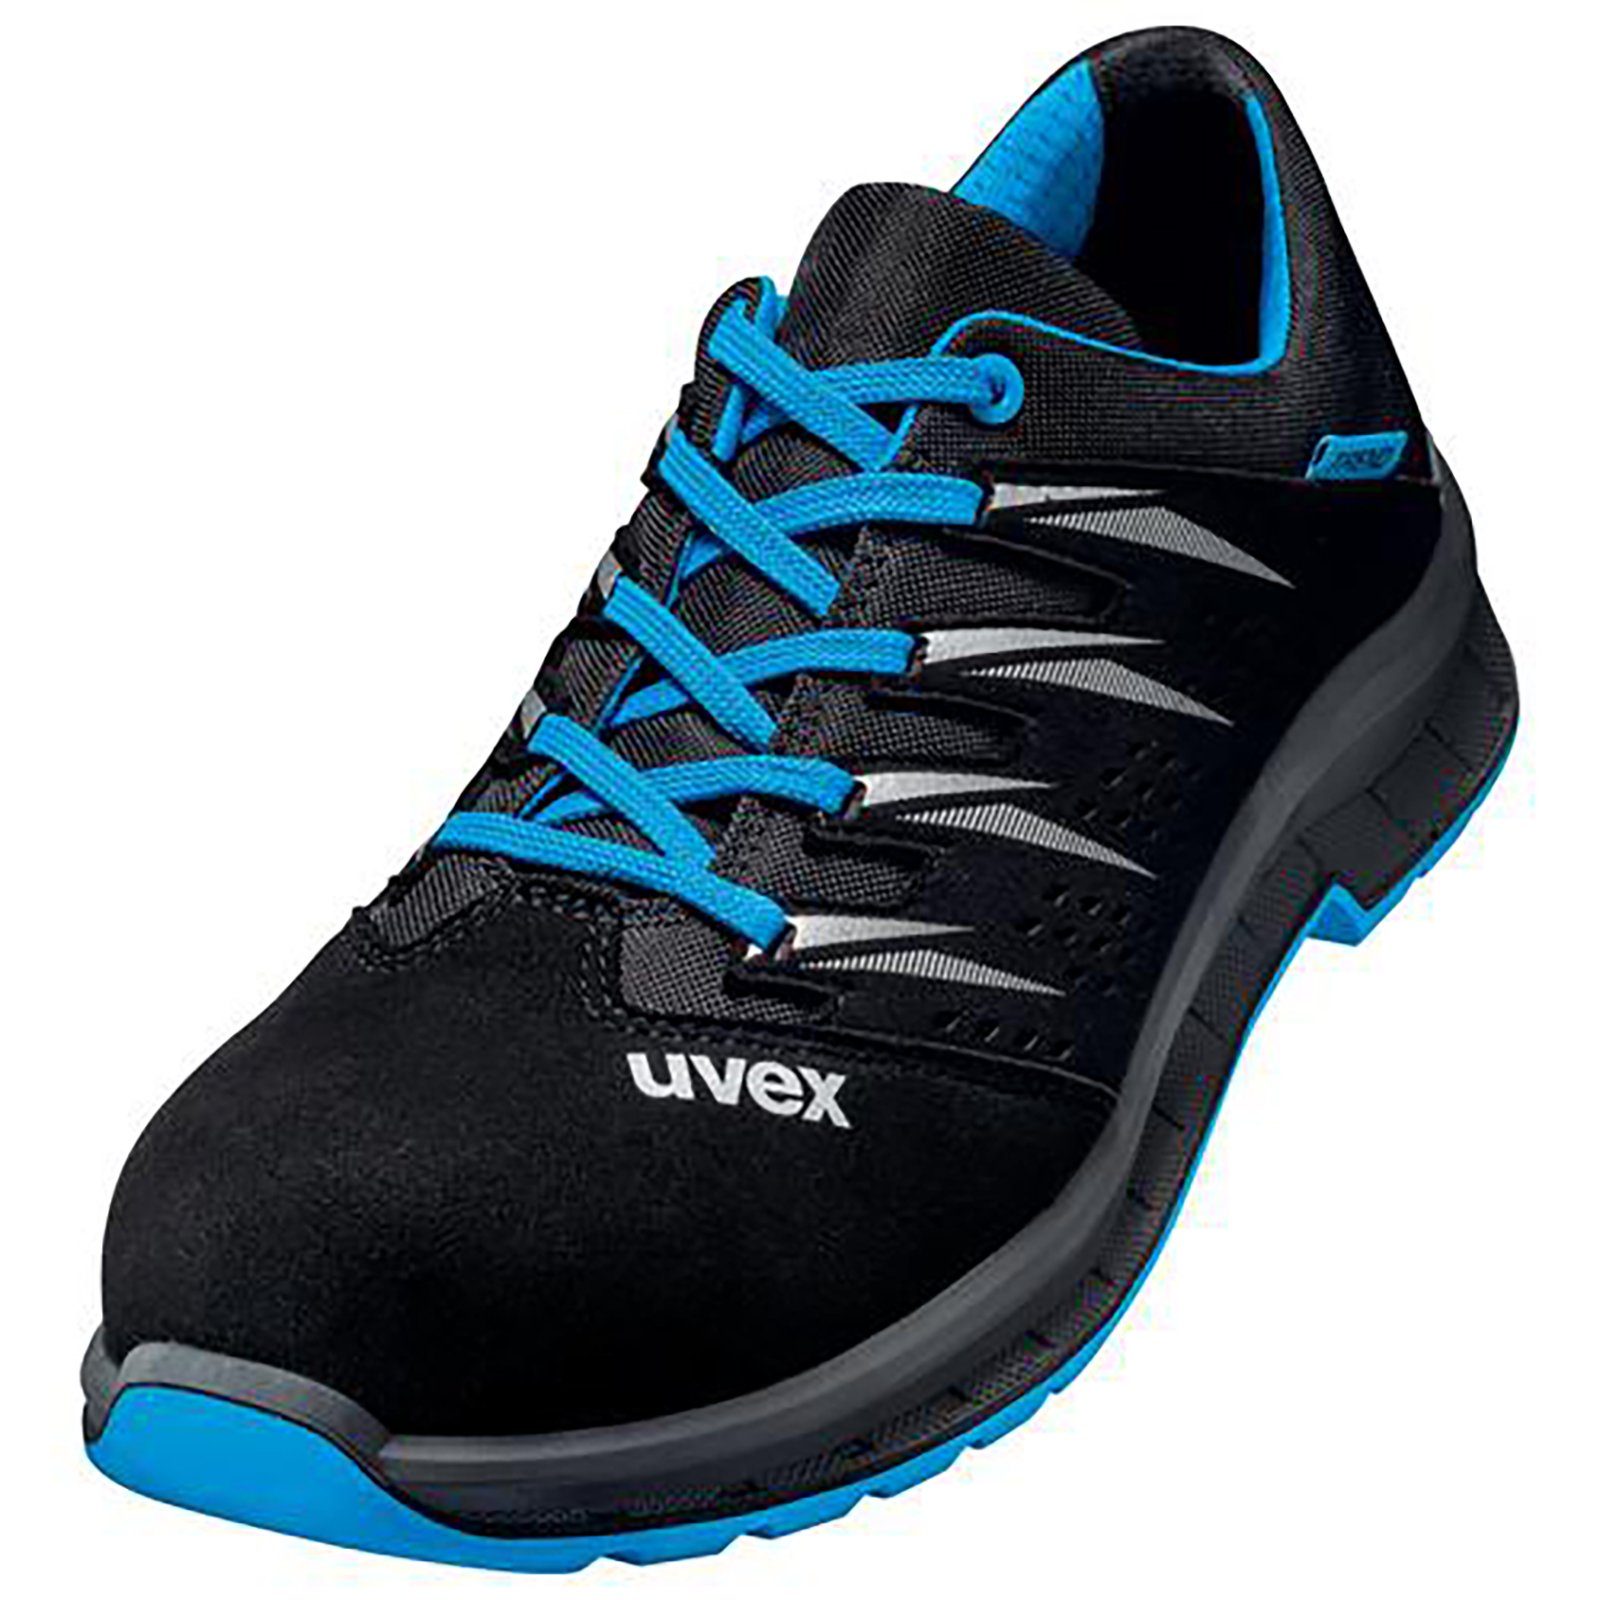 Uvex 2 trend schwarz Sicherheitsschuh Halbschuhe Weite S1P blau, 10